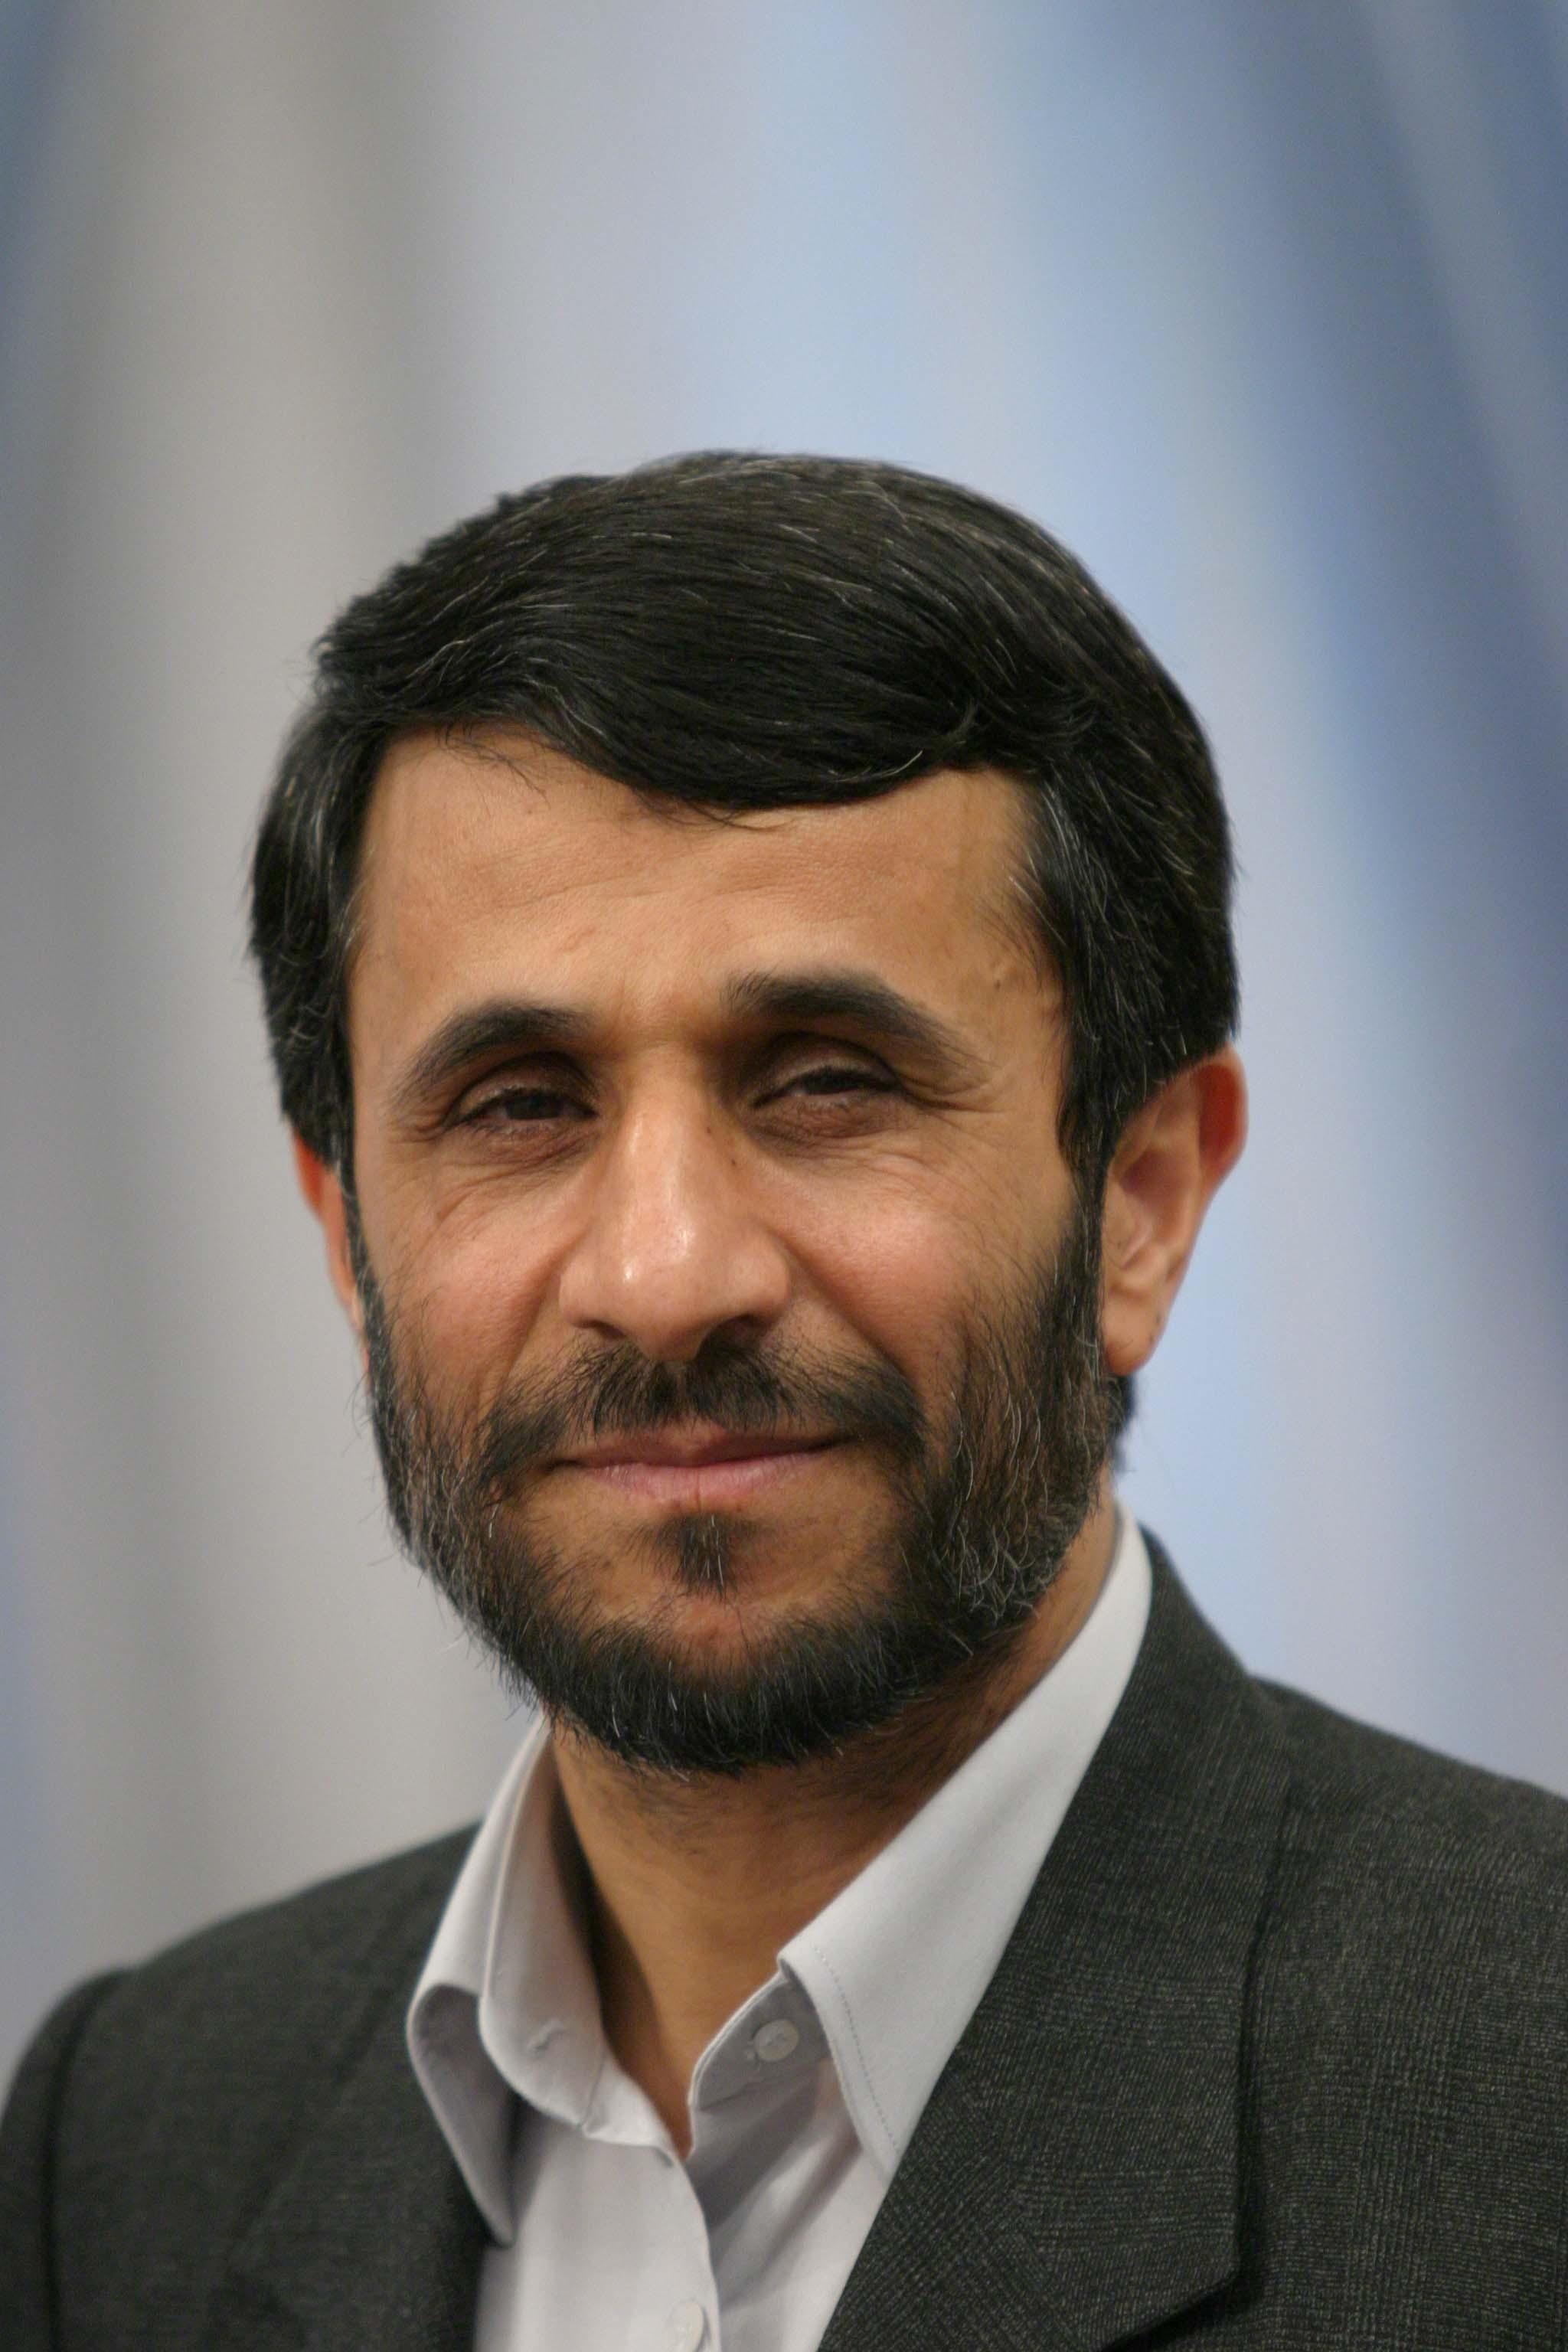 Latest picture of Iranian President Mahmoud Ahmadinejad